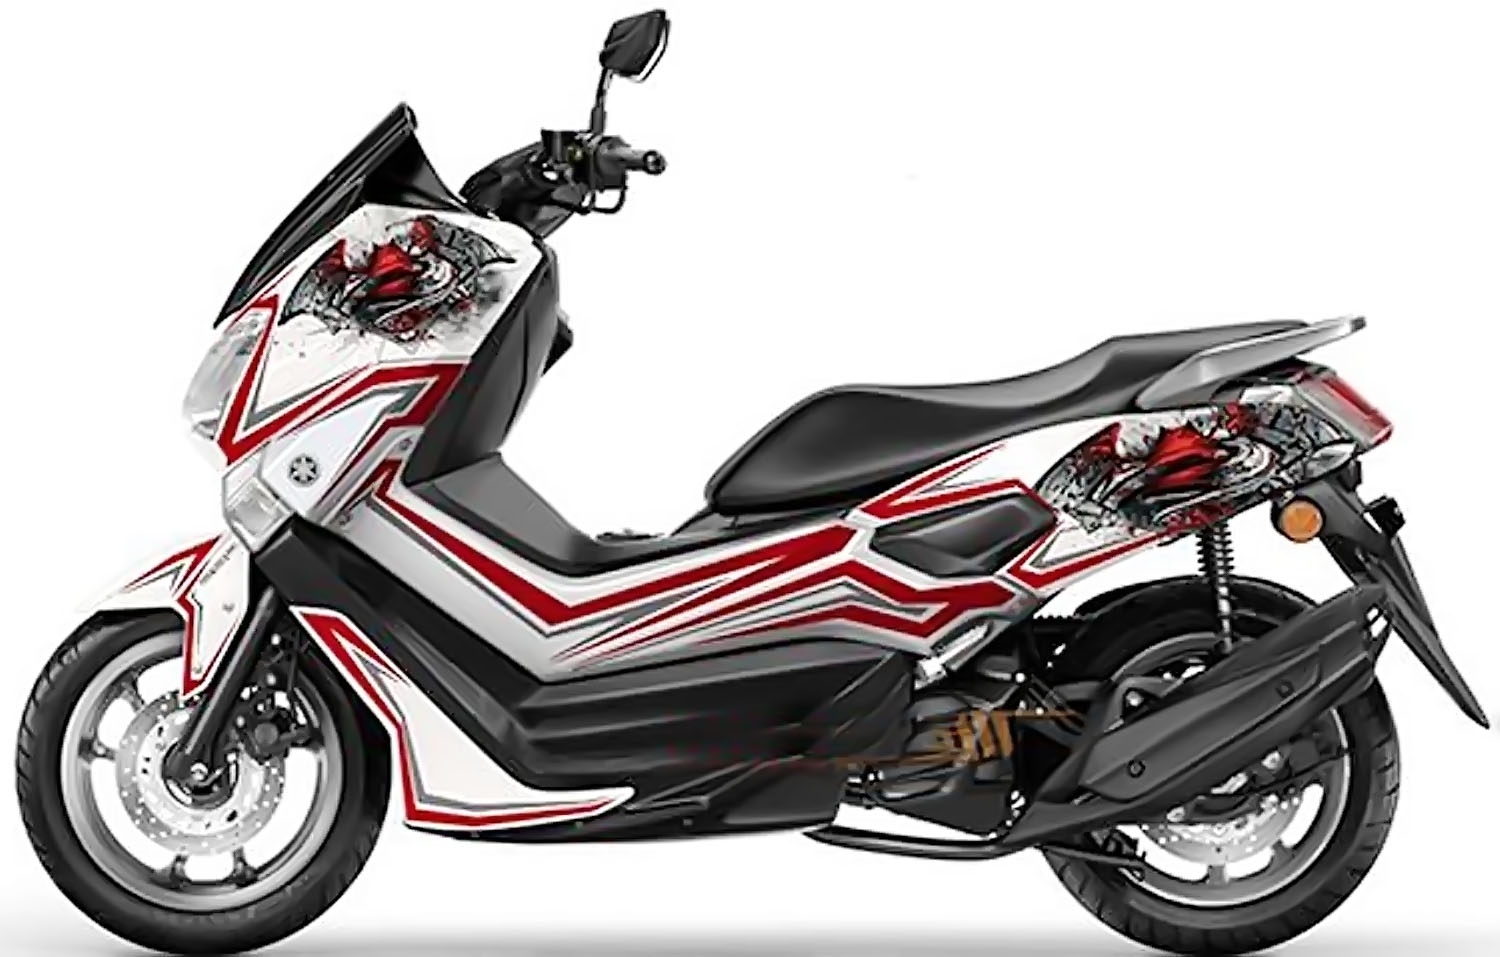 Harga Spesifikasi Dan Modifikasi New Yamaha Nmax 155cc 2018 Jozz